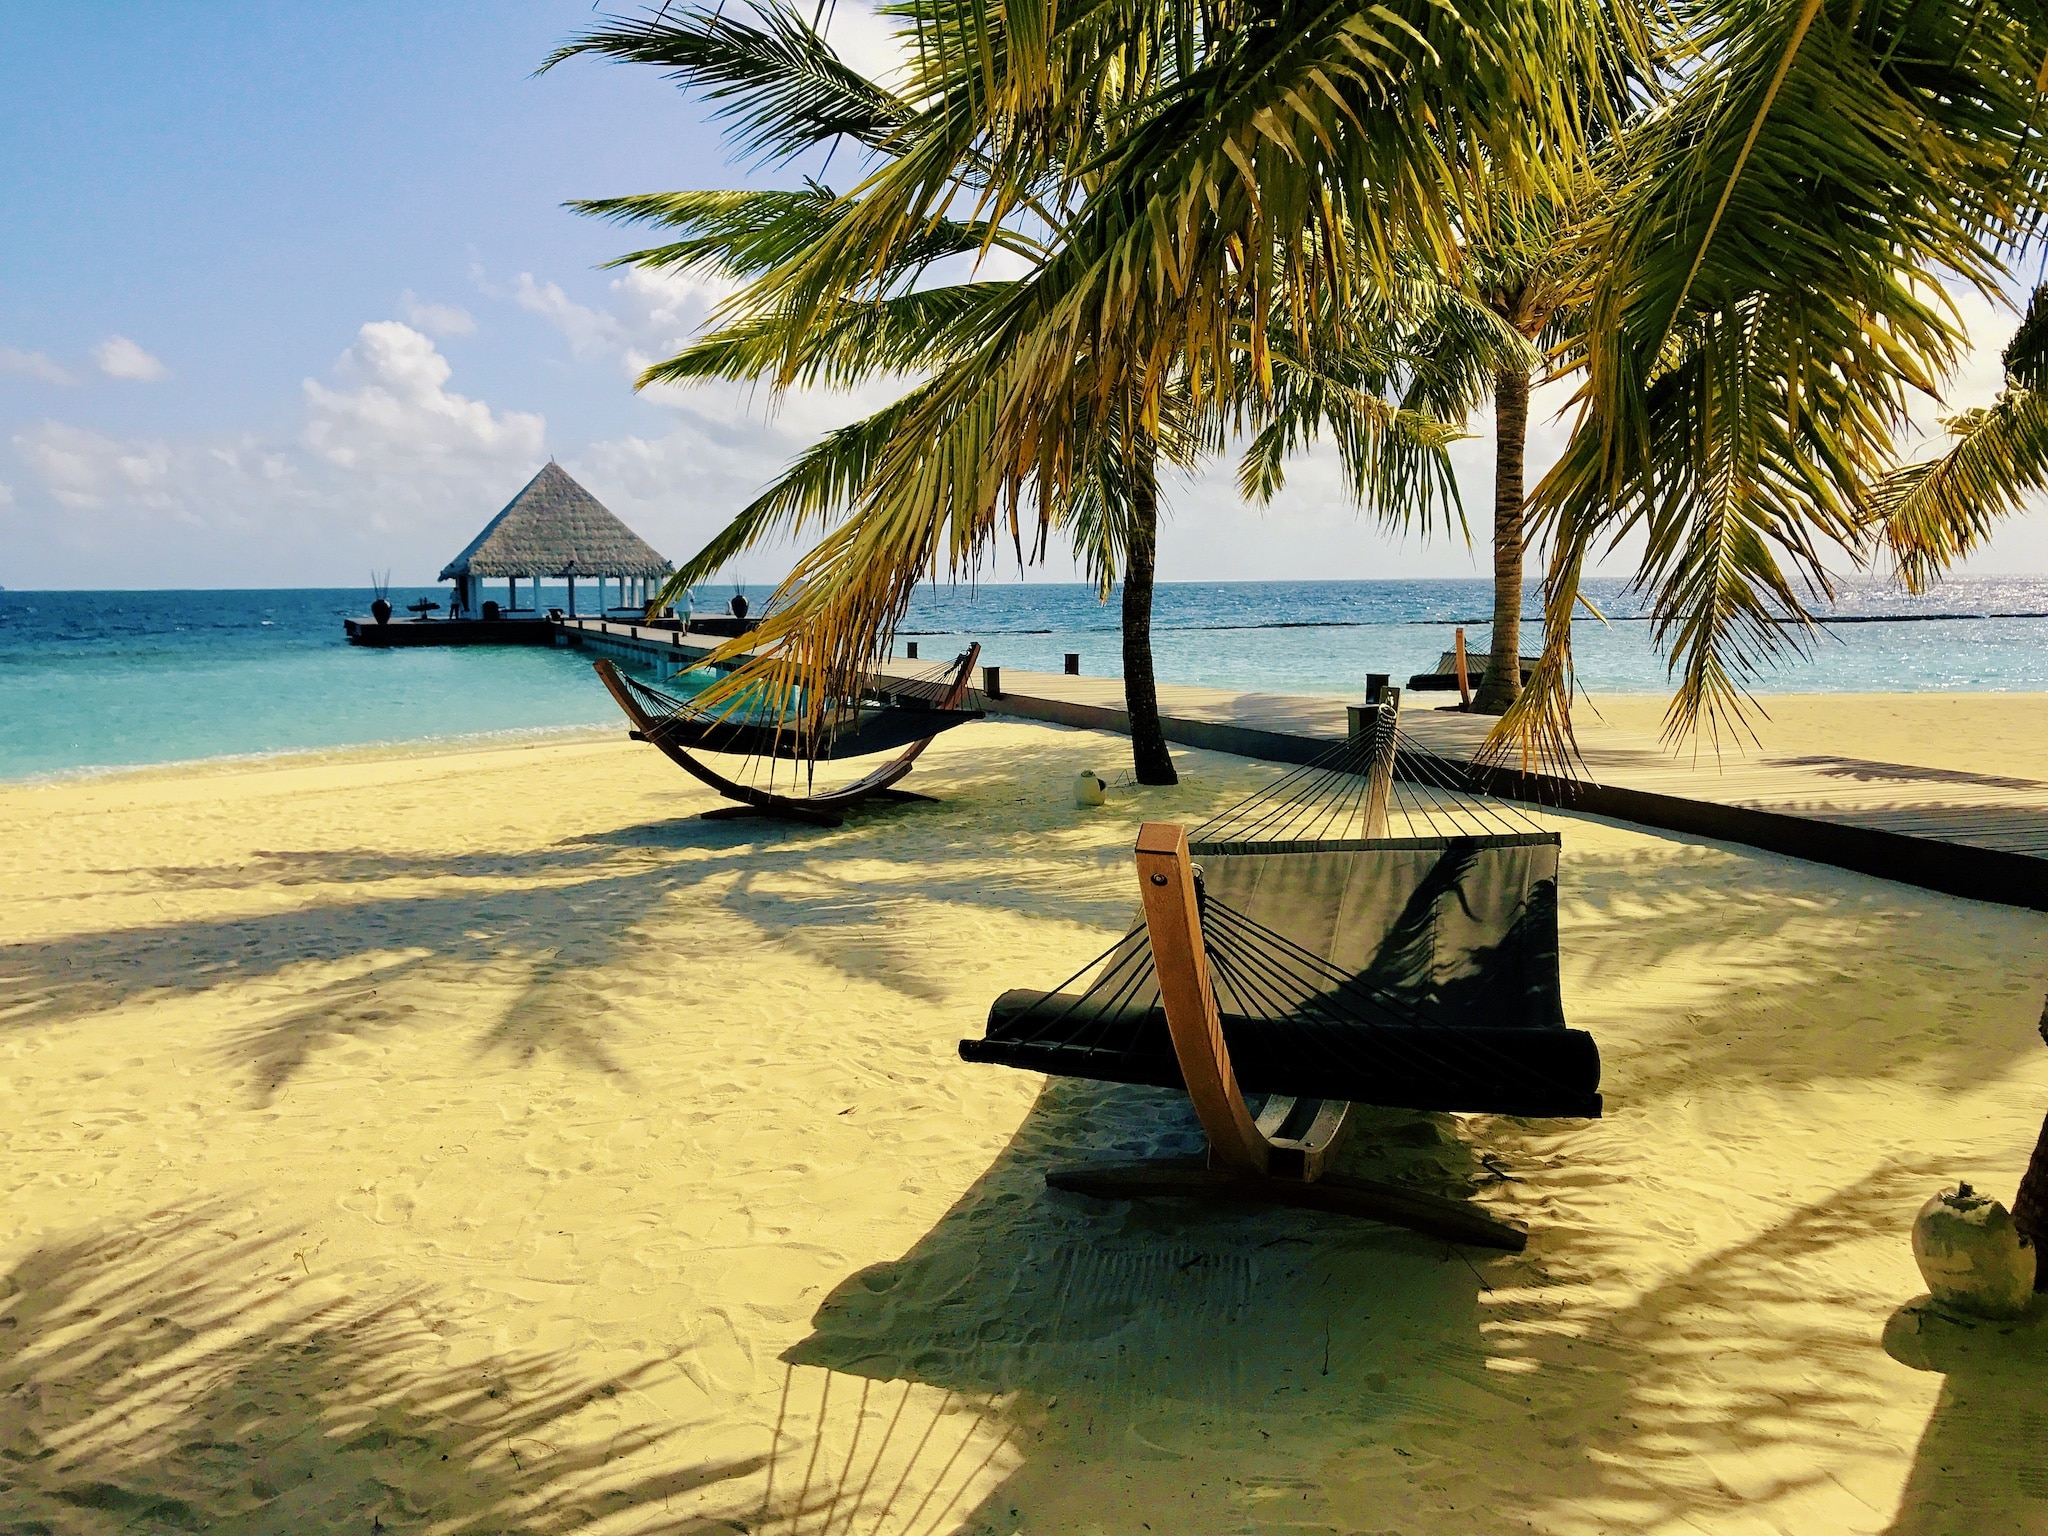 Réservez des vacances aux Maldives à bas prix – conseils et expériences pour l'île paradisiaque